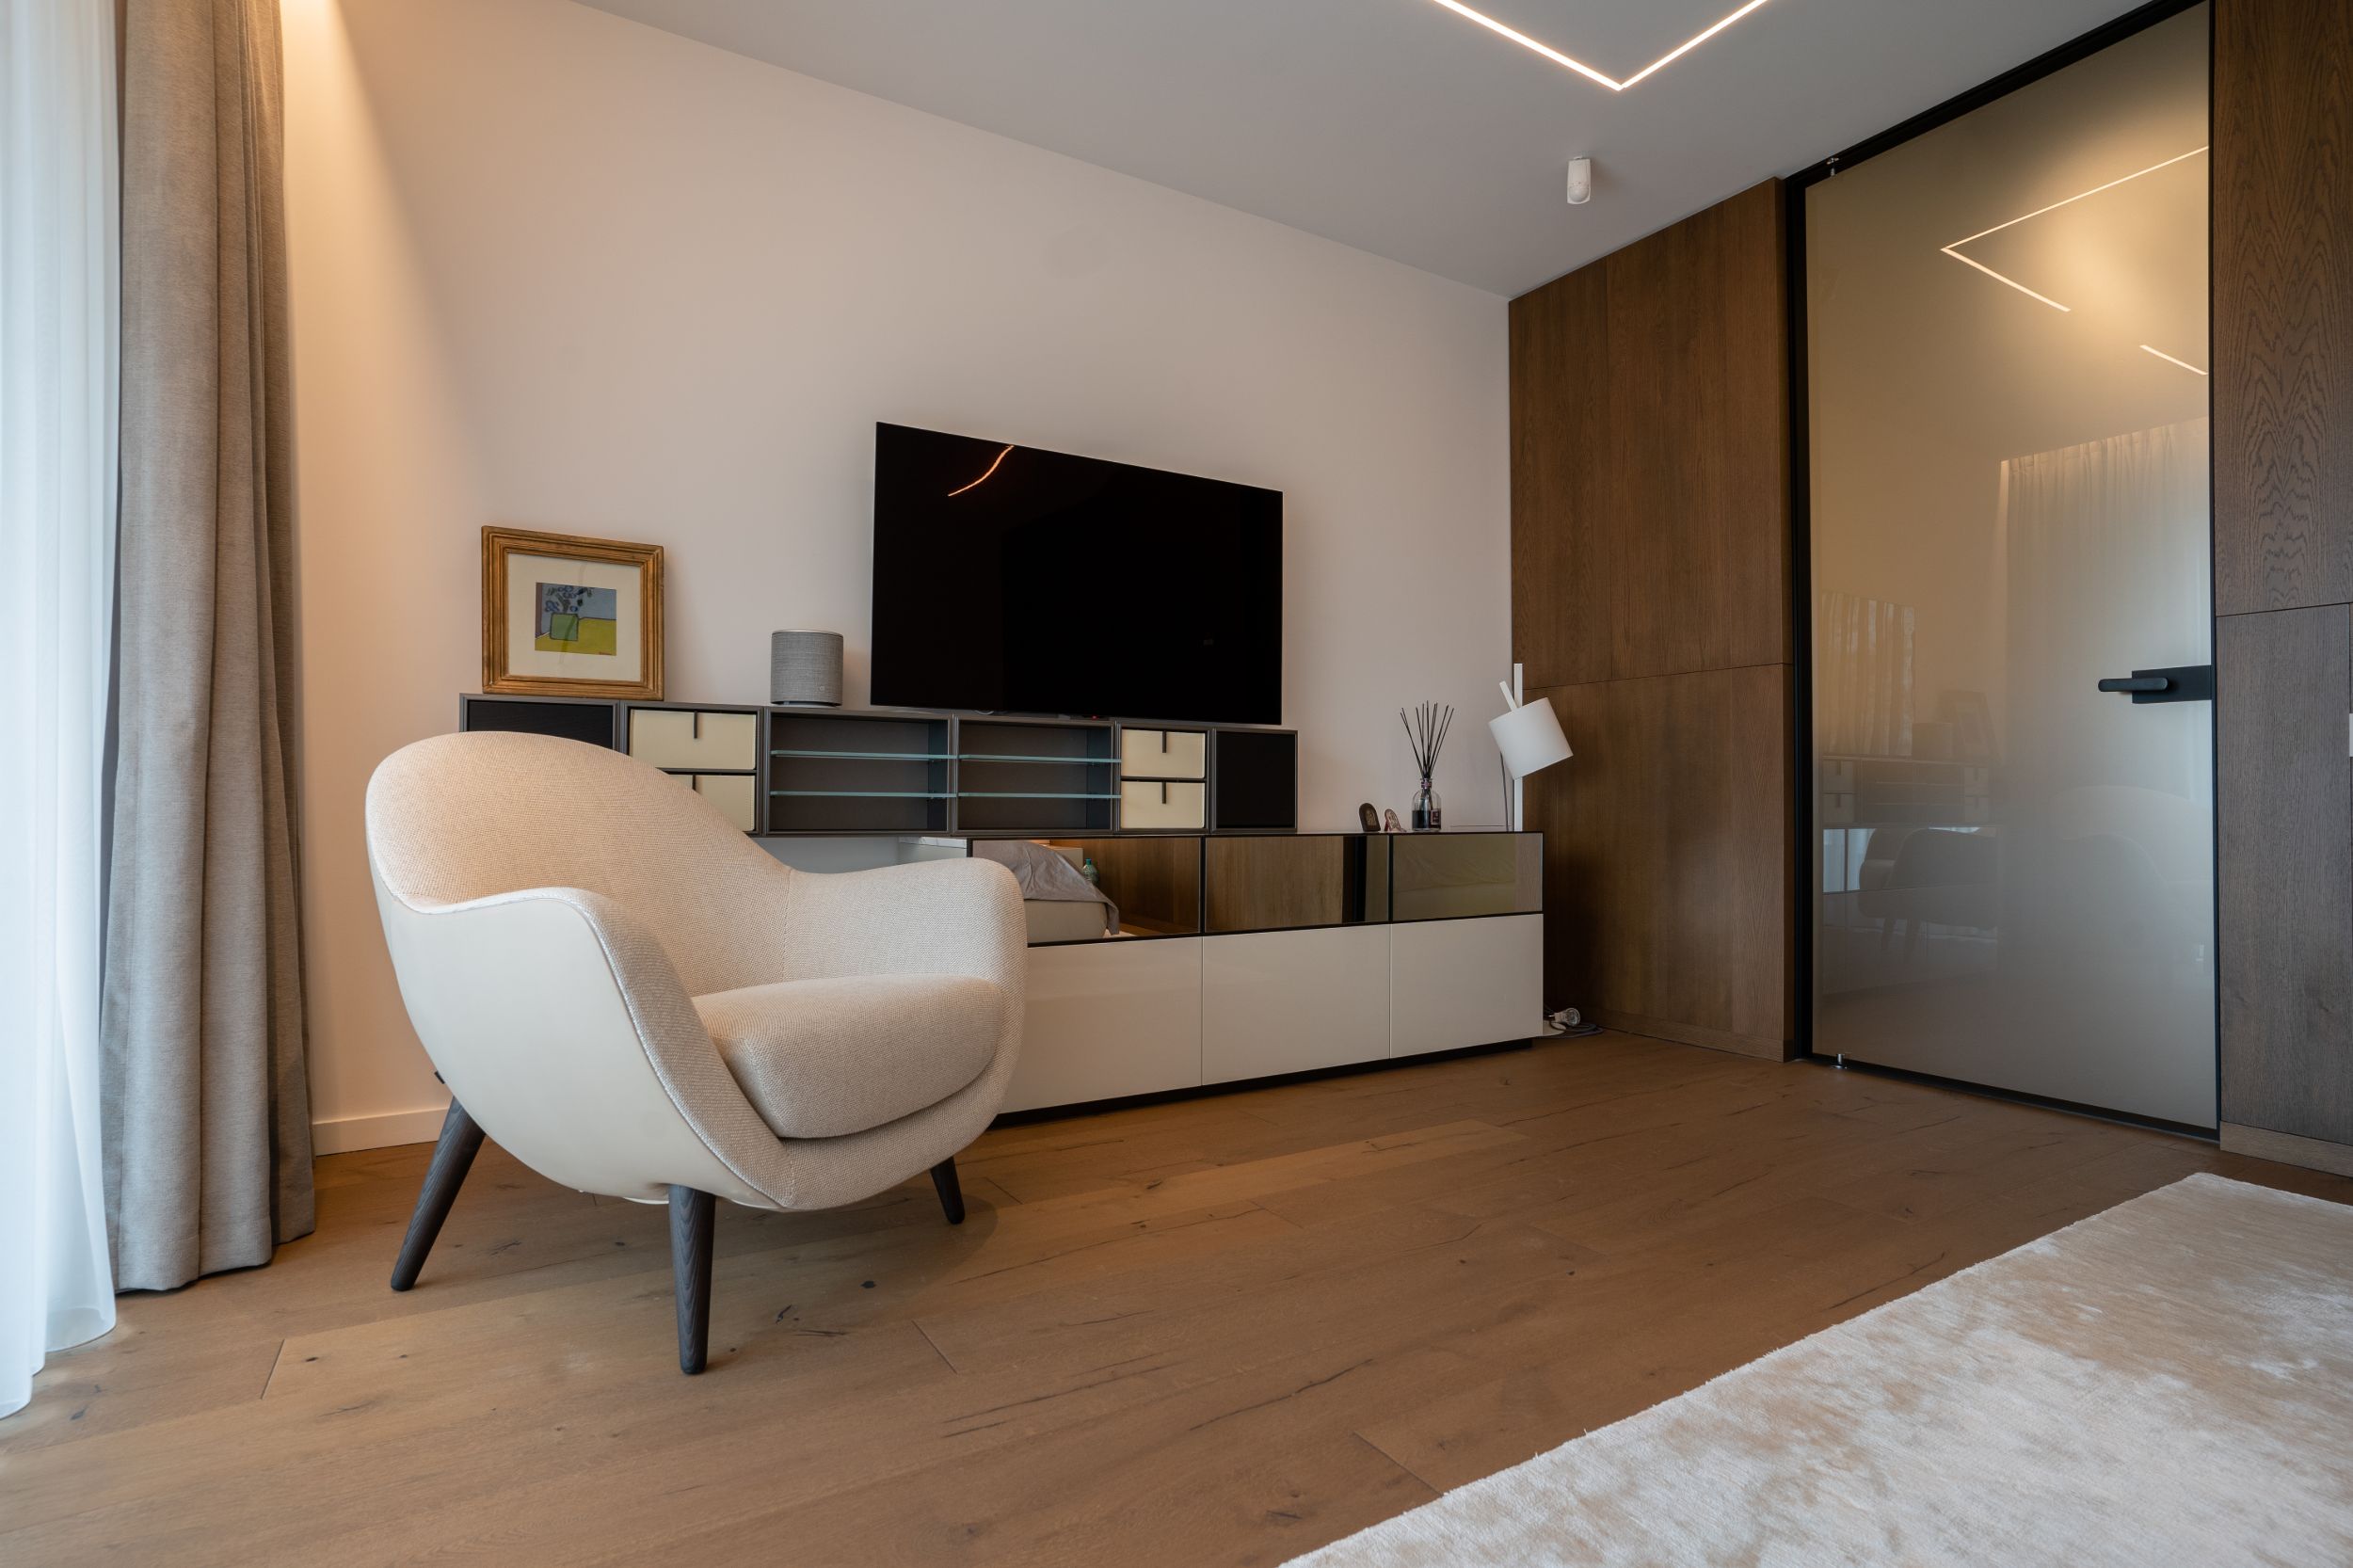 Premium interior design - Luxury Apartment Bucharest - arch. Victor Grosu - Hype Project - Poliform furniture - architect Victor Grosu